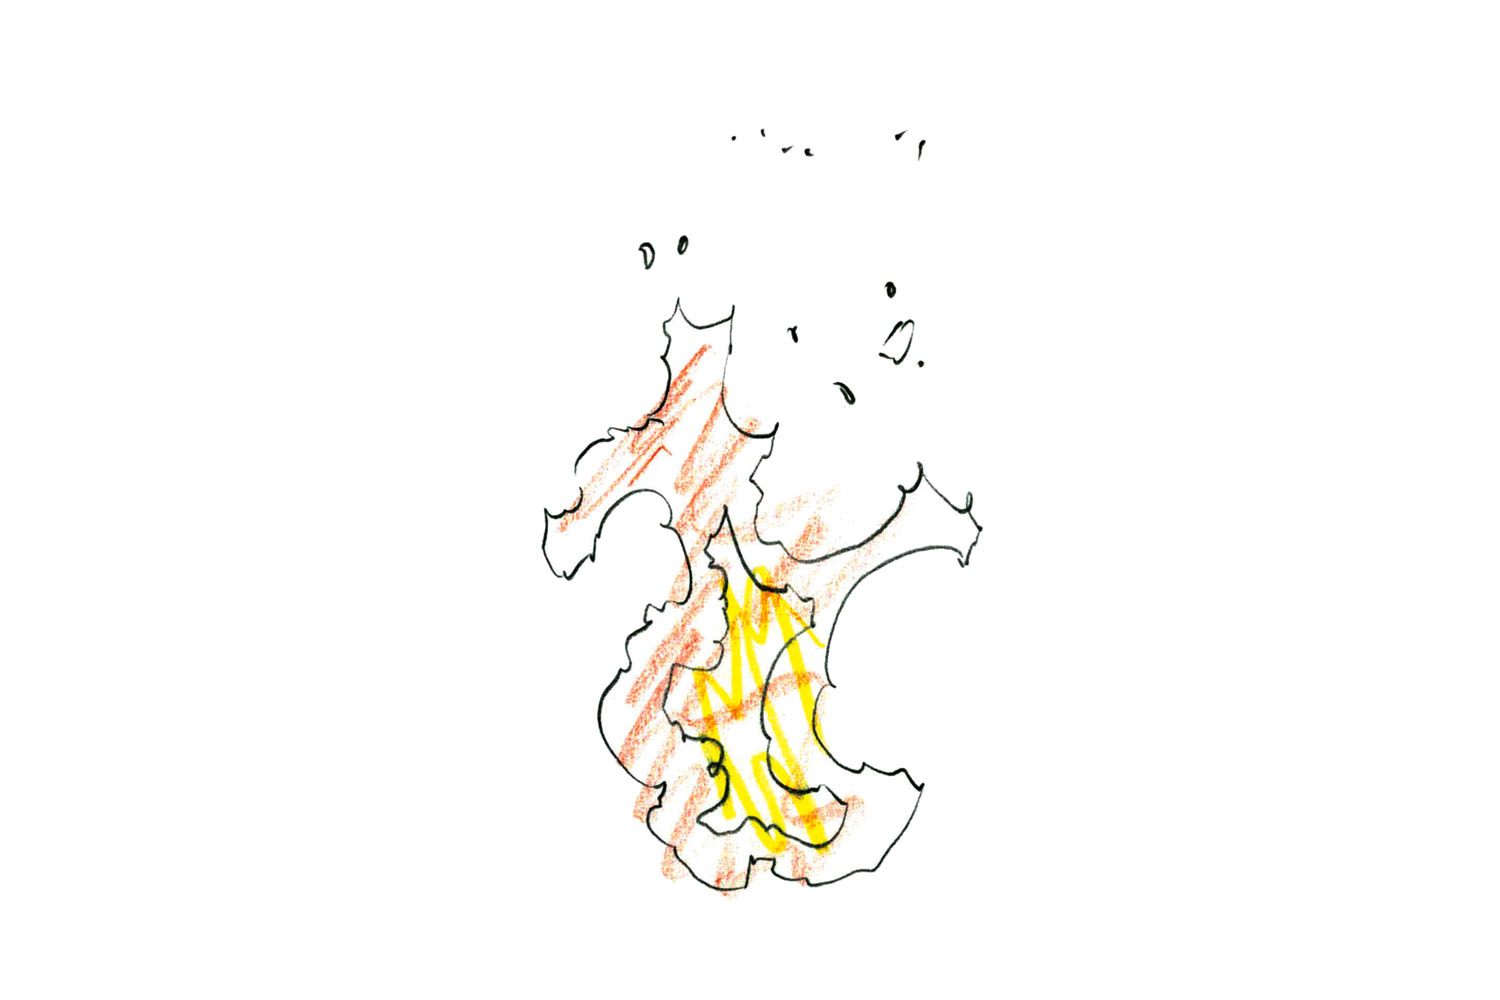 アニメーター小澤和則のエフェクト作画のテクニック 炎の動き を自然に表現する方法 アニメーションのエフェクト作画テクニック 第1回 Pictures